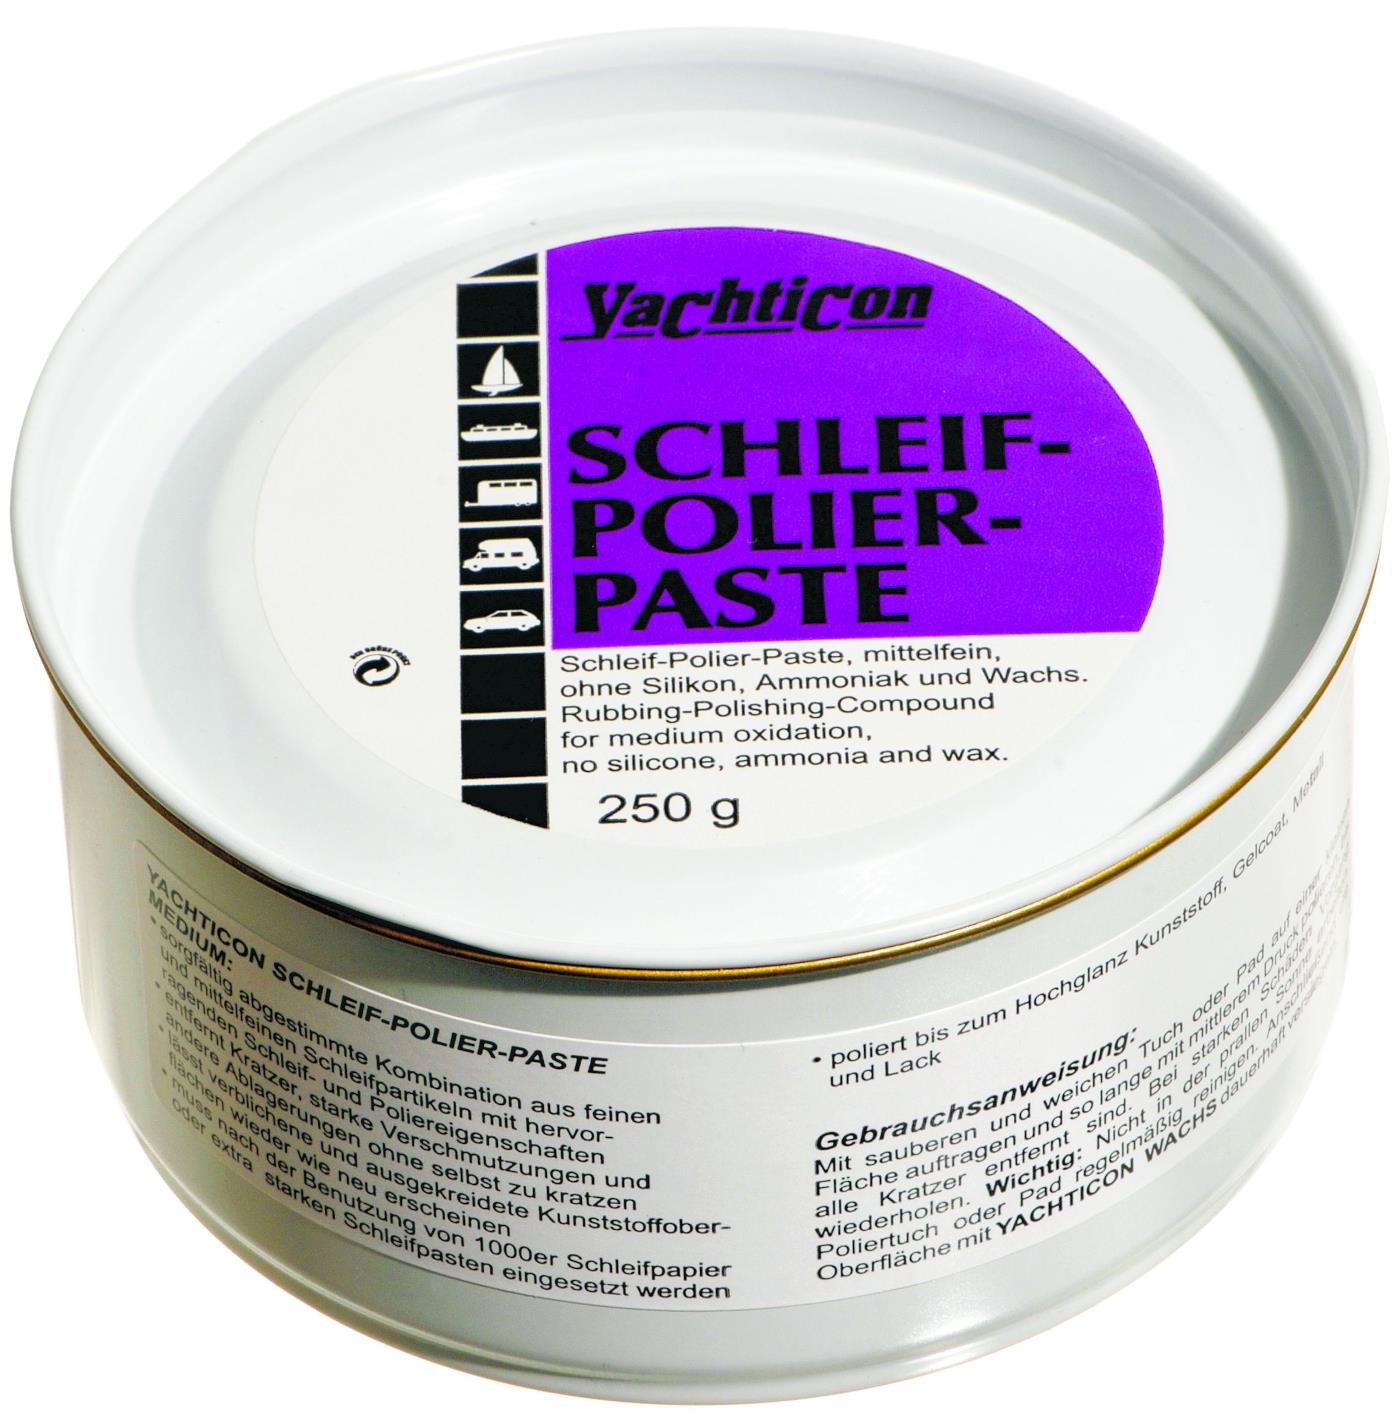 Yachticon Schleif-Polier-Paste medium M 100 / 250 g